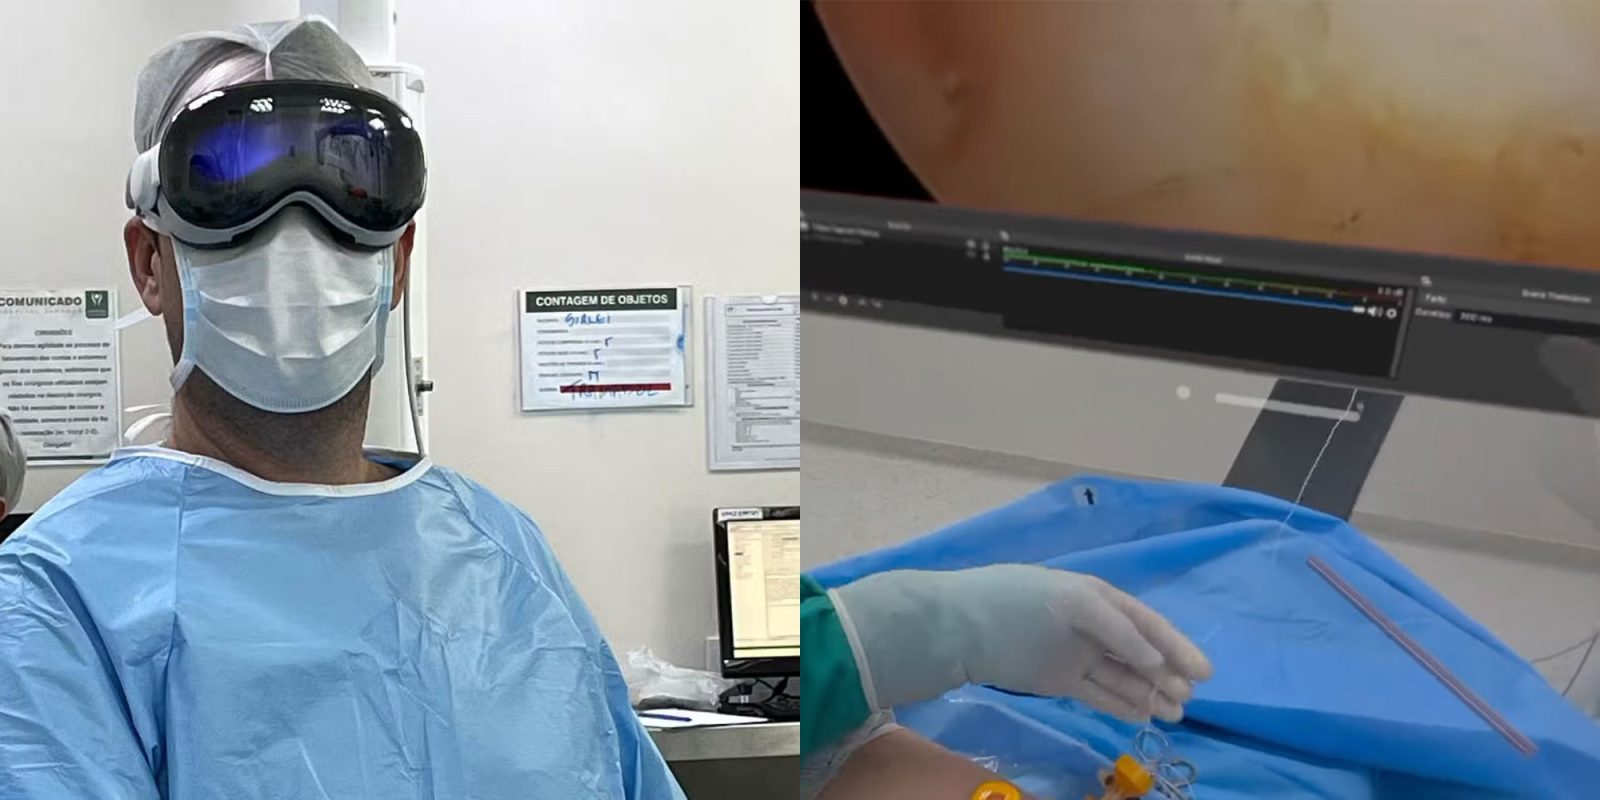 Apple Vision Pro utilisé pour assister un médecin lors d'une opération d'arthroscopie de l'épaule au Brésil